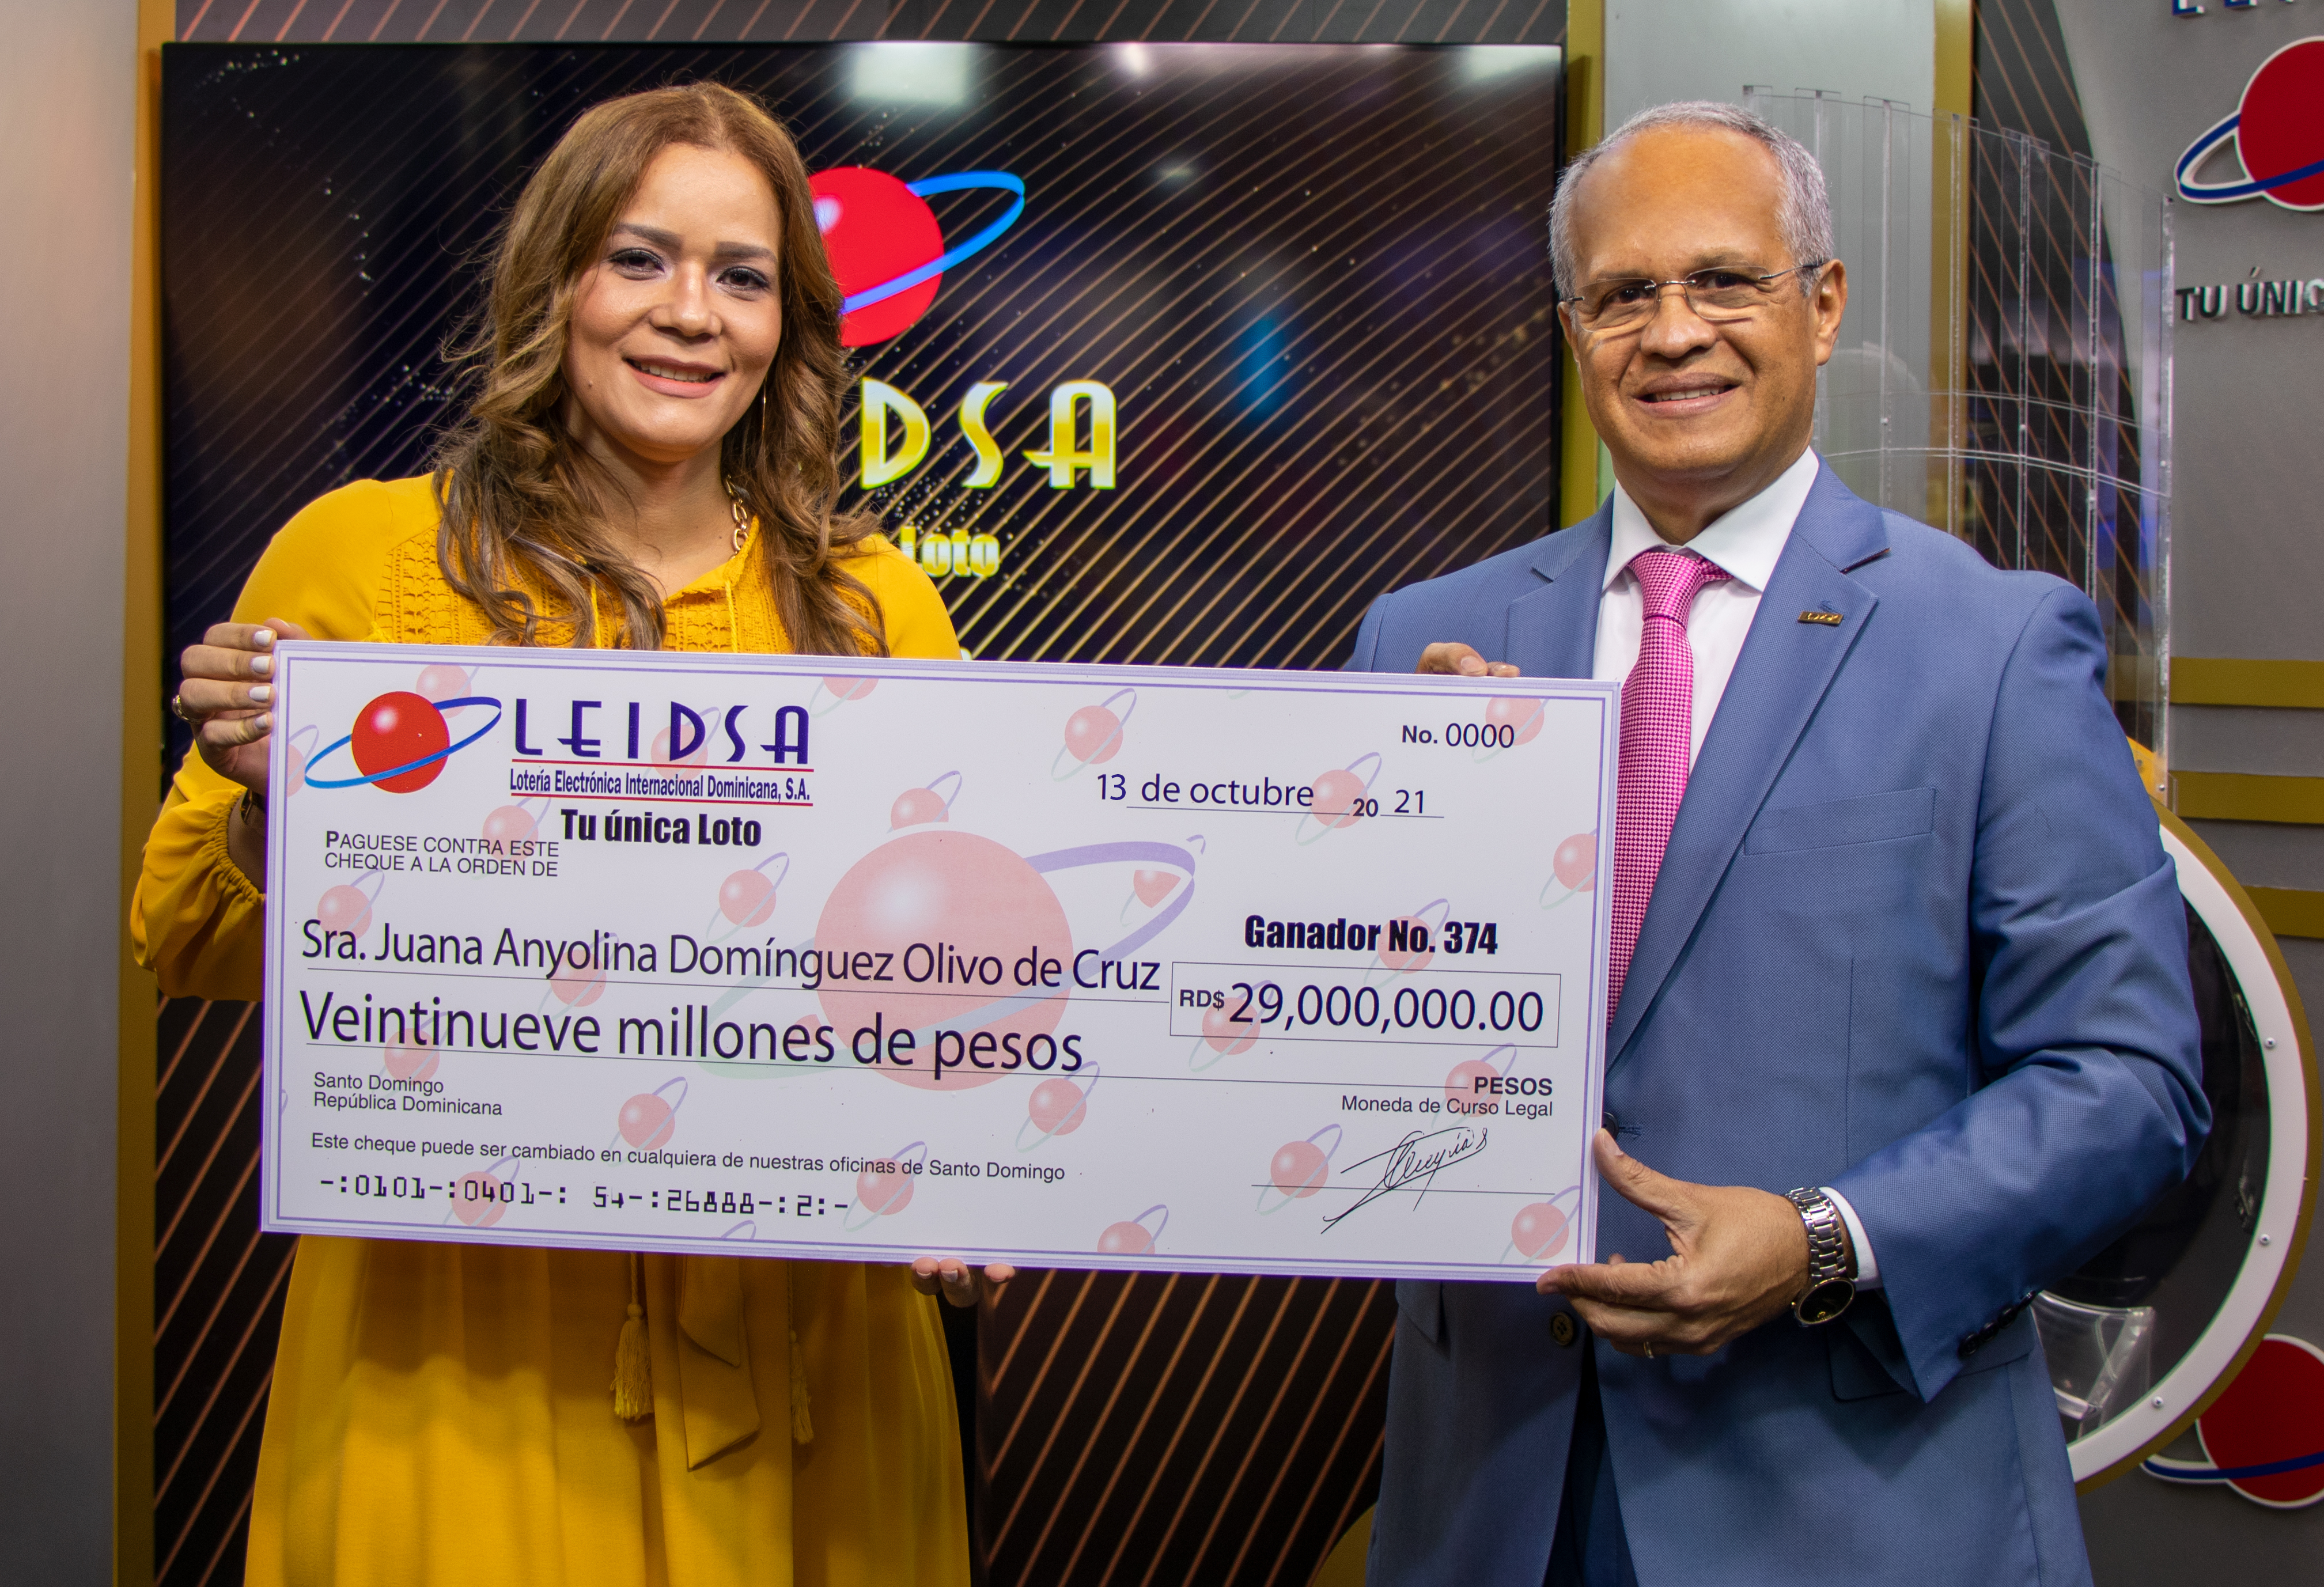 LEIDSA entrega 29 millones de pesos a nueva ganadora de la LOTO